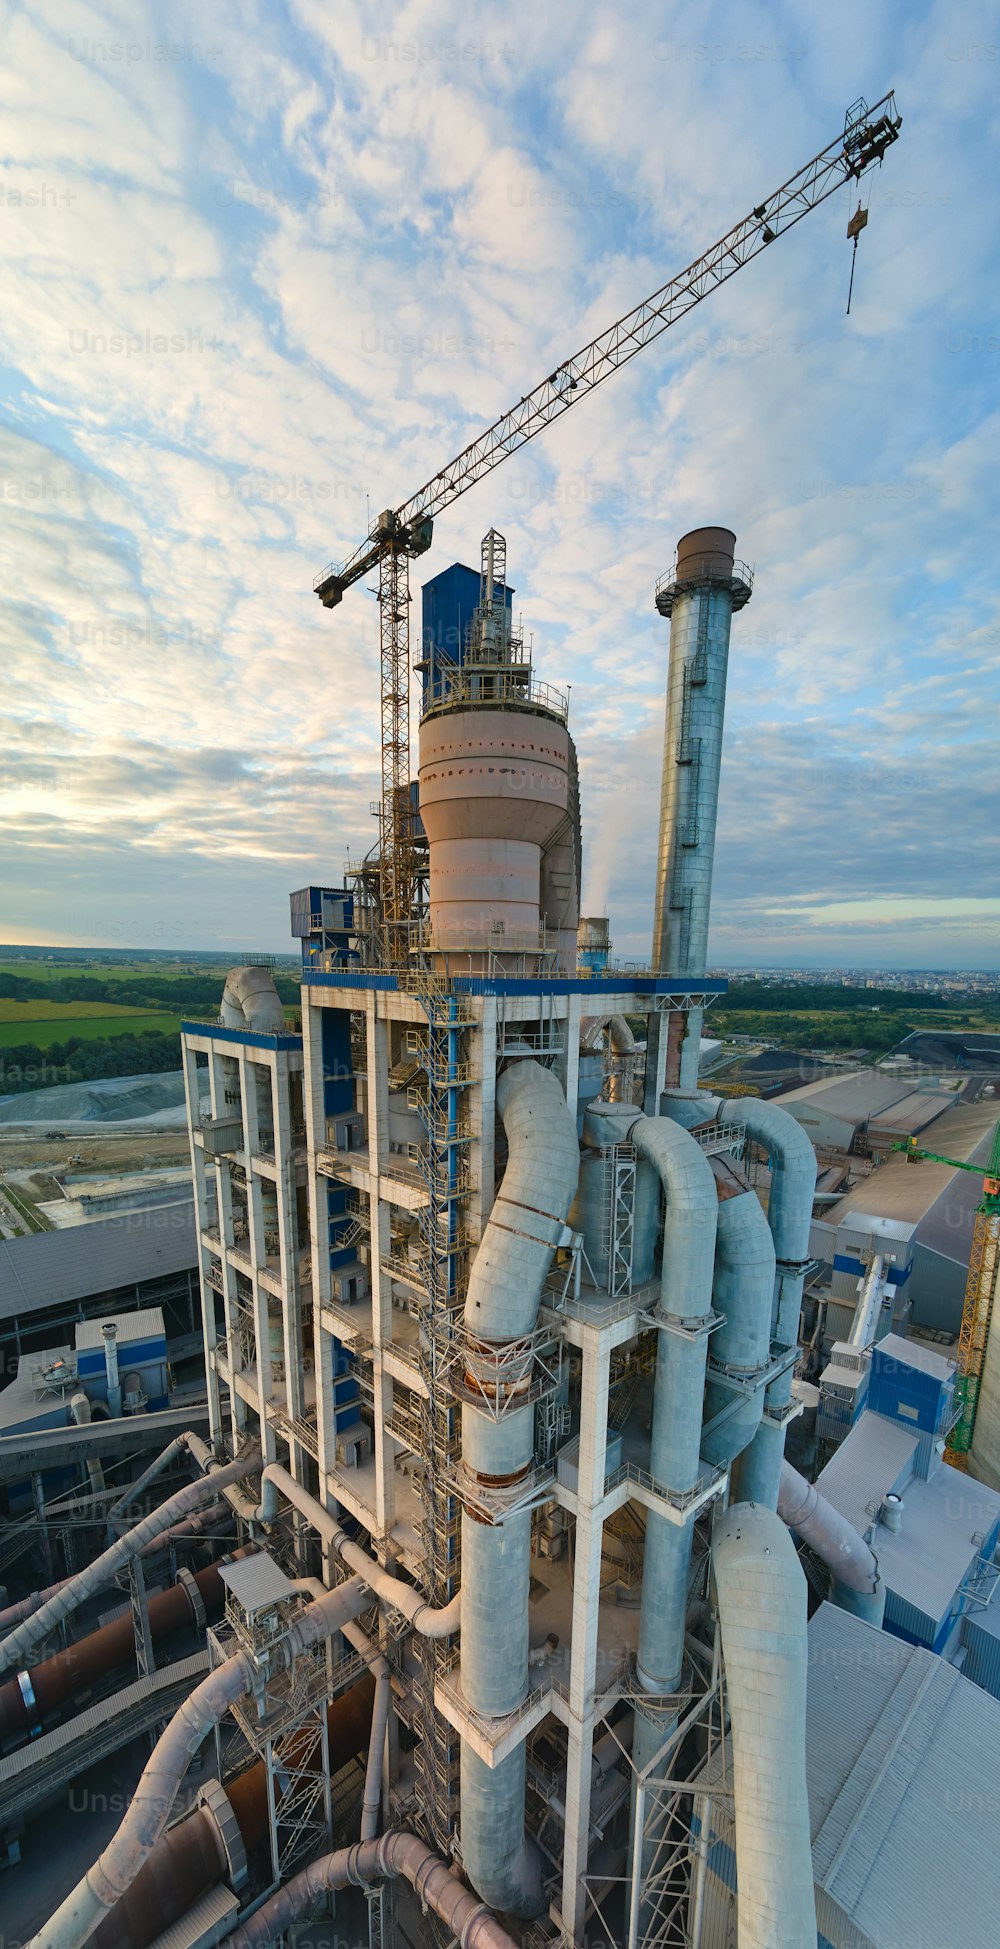 Luftaufnahme der Zementfabrik mit hoher Betonwerkskonstruktion und Turmdrehkran am industriellen Produktionsstandort. Herstellung und globales Industriekonzept.